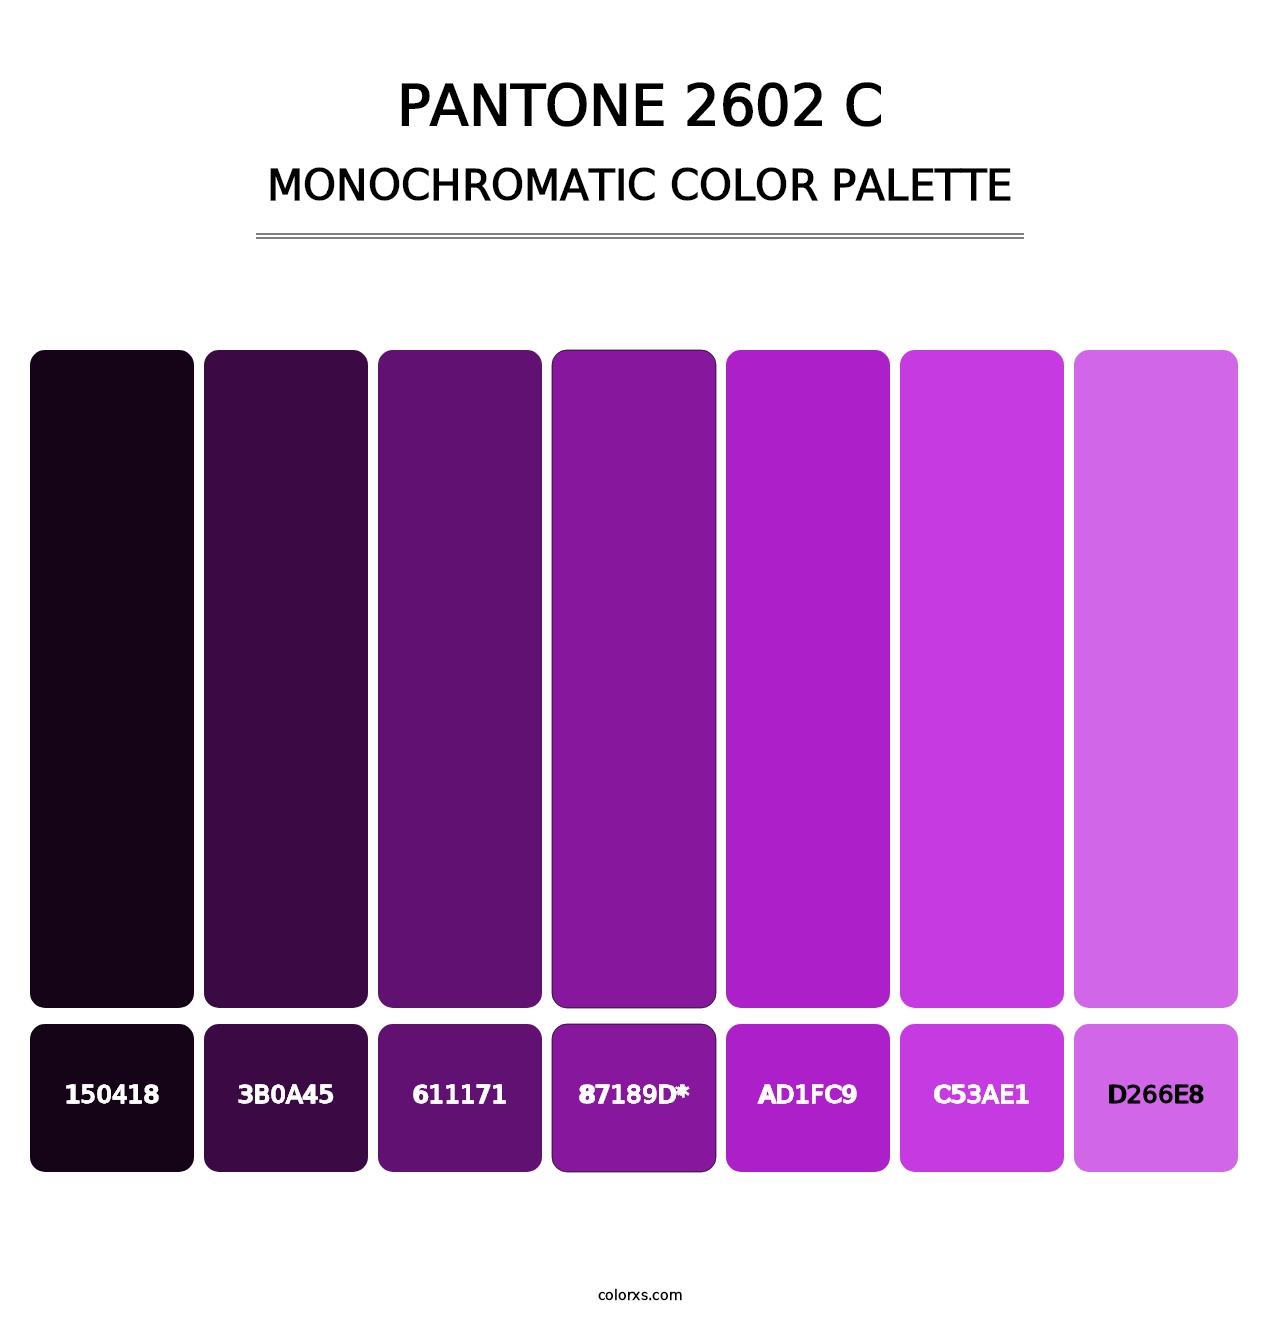 PANTONE 2602 C - Monochromatic Color Palette